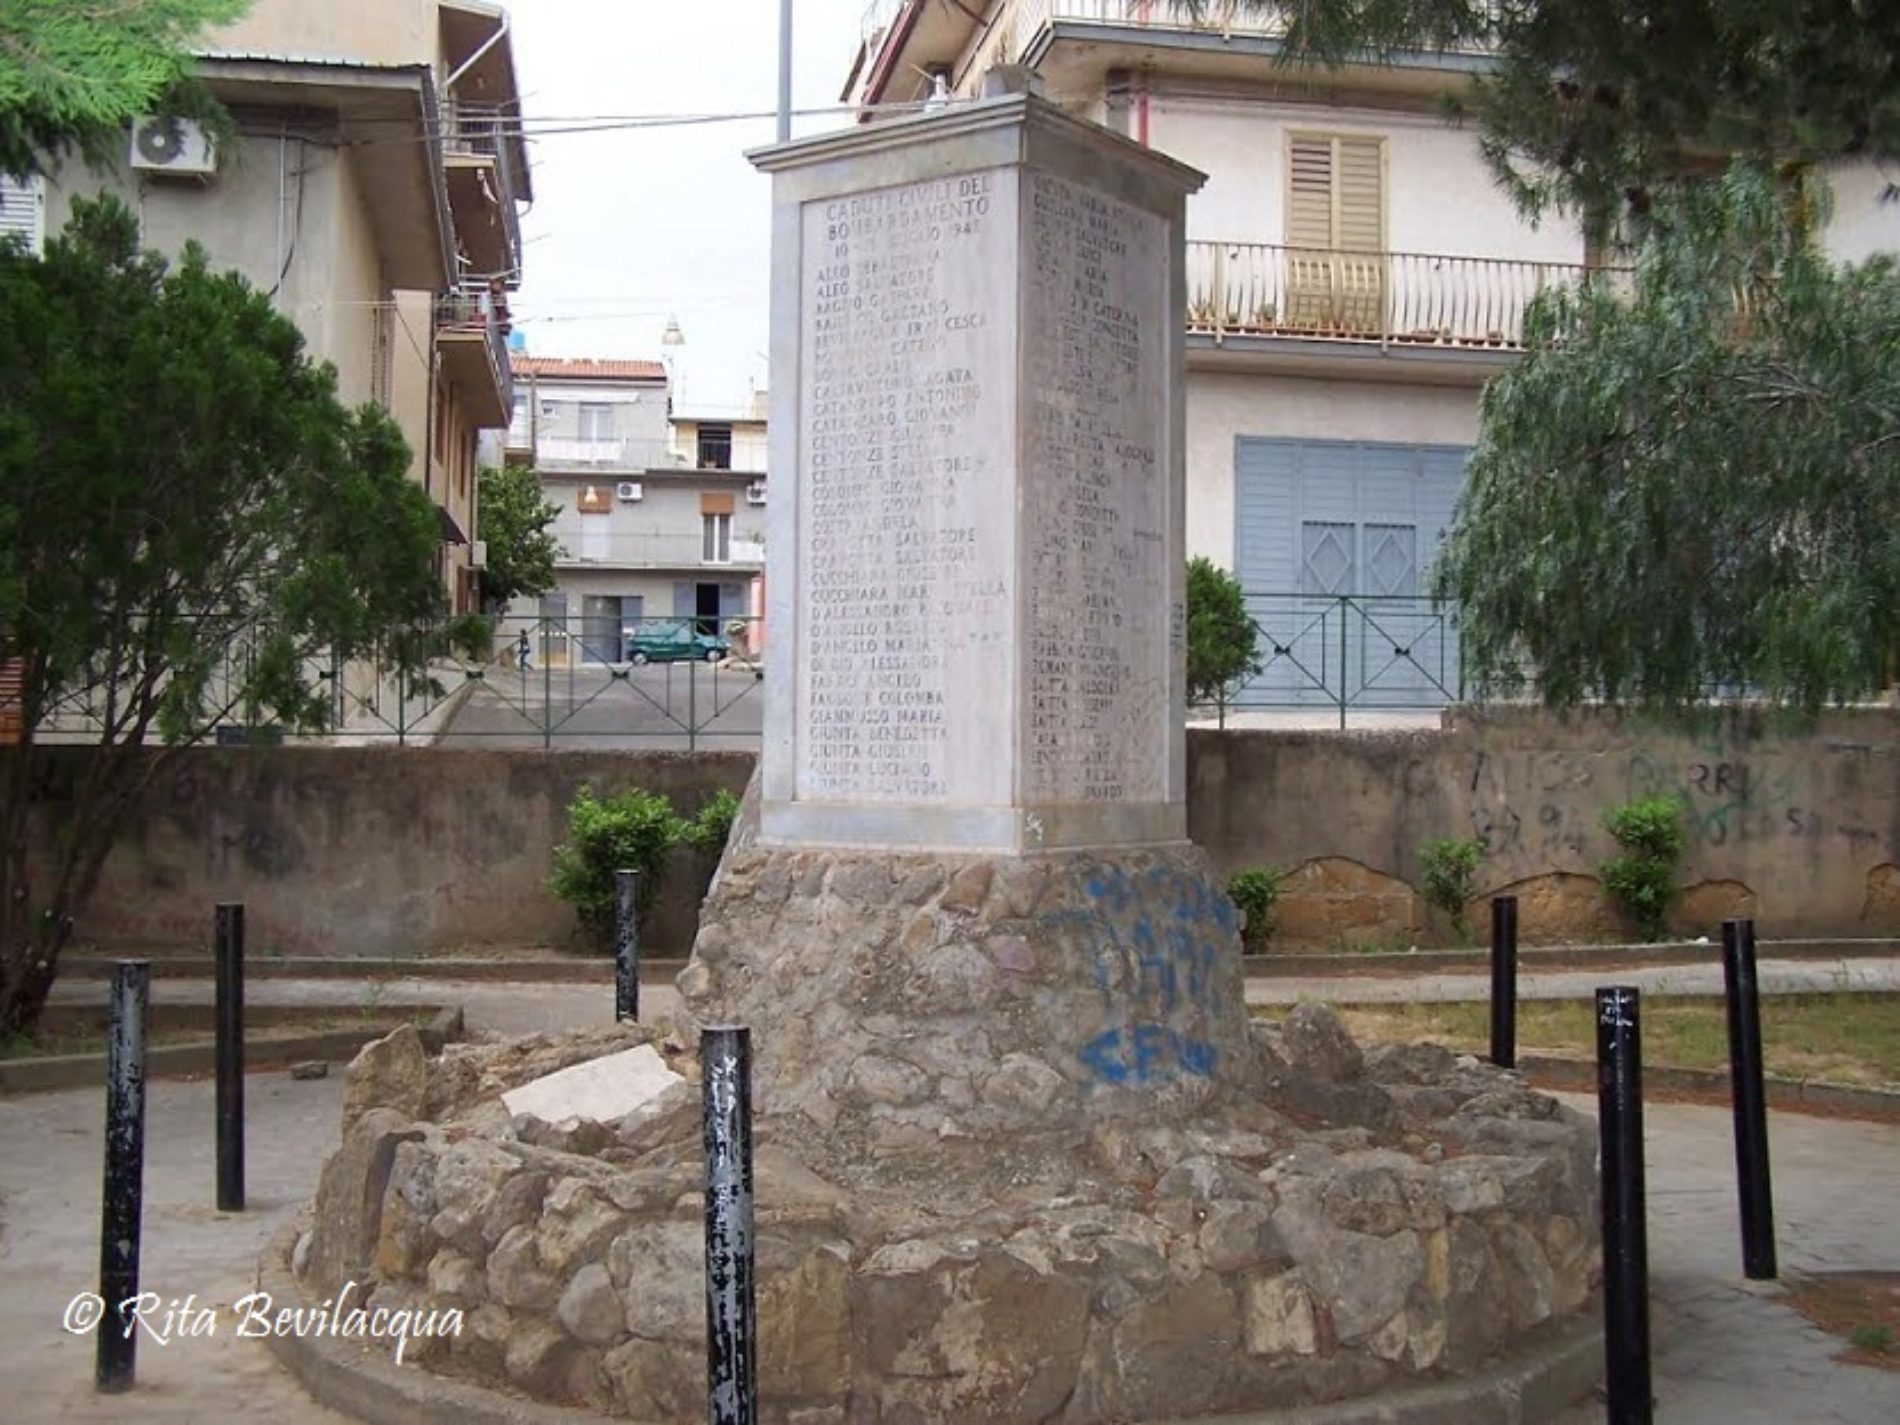 18 luglio 1943- i pesanti bombardamenti che colpirono Barrafranca